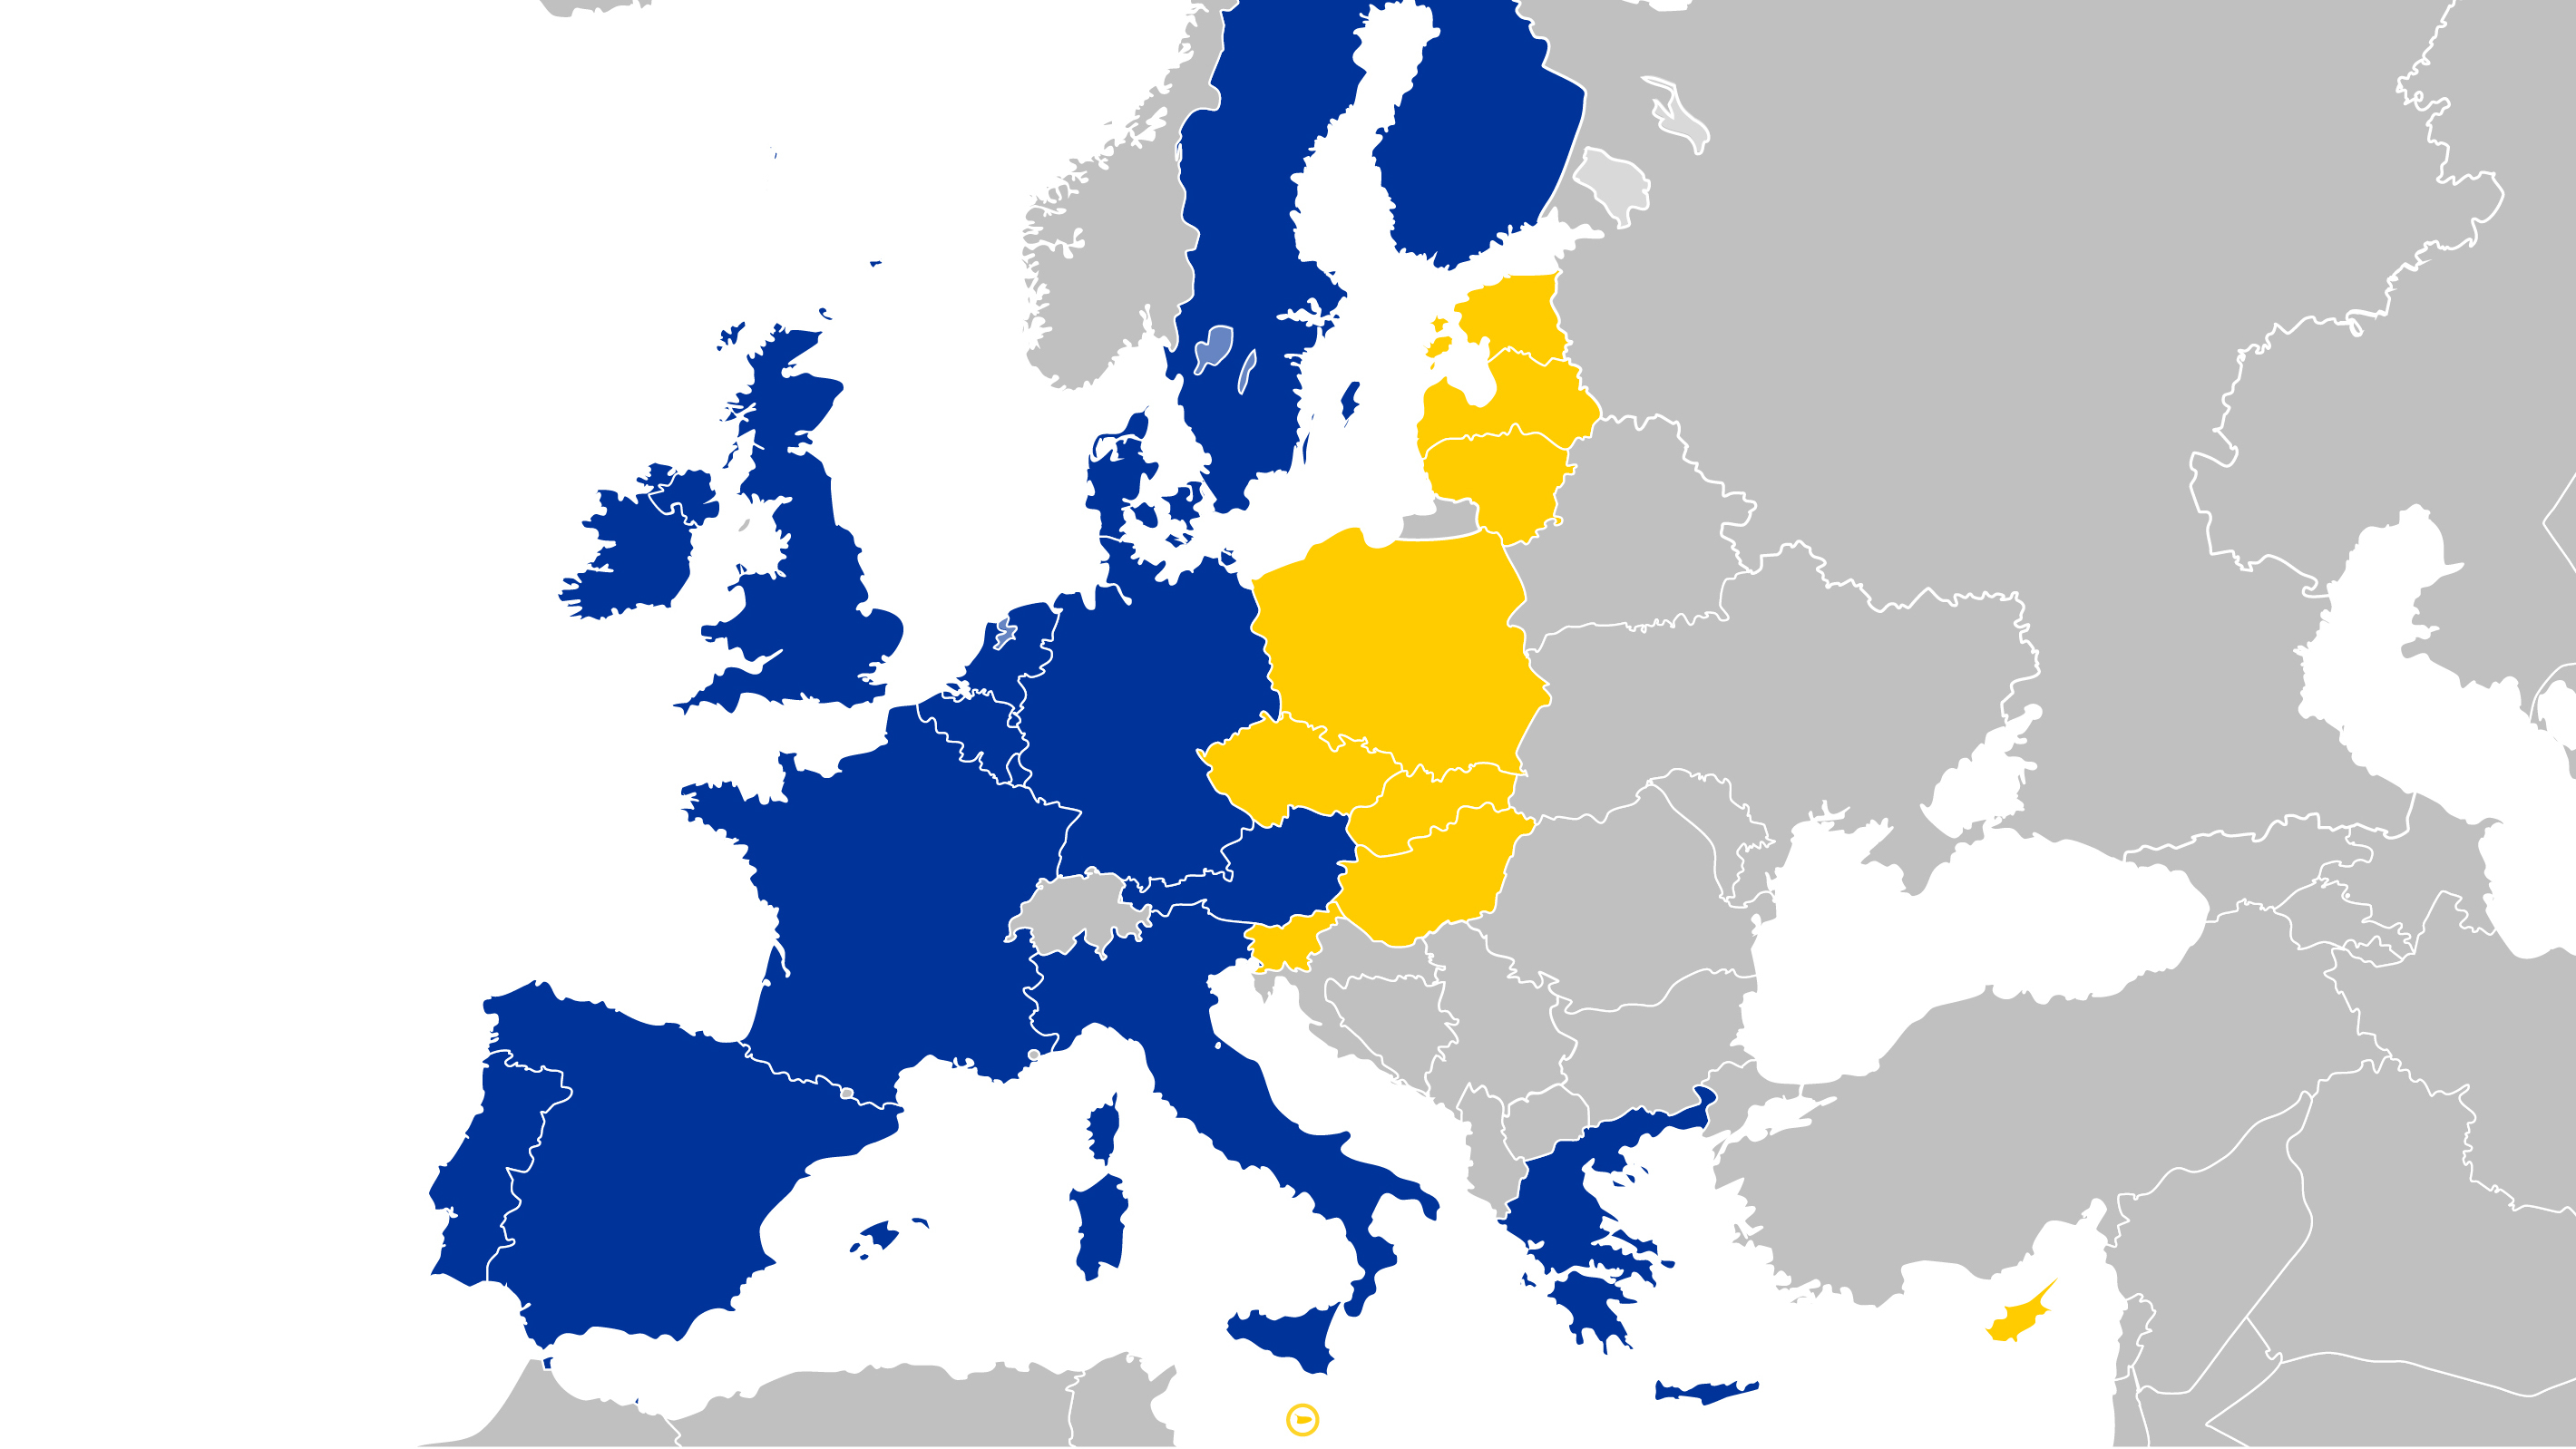 Am 1. Mai 2004 wurden die Länder Estland, Lettland, Litauen, Malta, Polen, Slowakei, Slowenien, Tschechien, Ungarn und der griechische Teil Zyperns als Vollmitglieder in der Europäischen Union aufgenommen. Am 1. Januar 2007 folgten die Länder Rumänien und